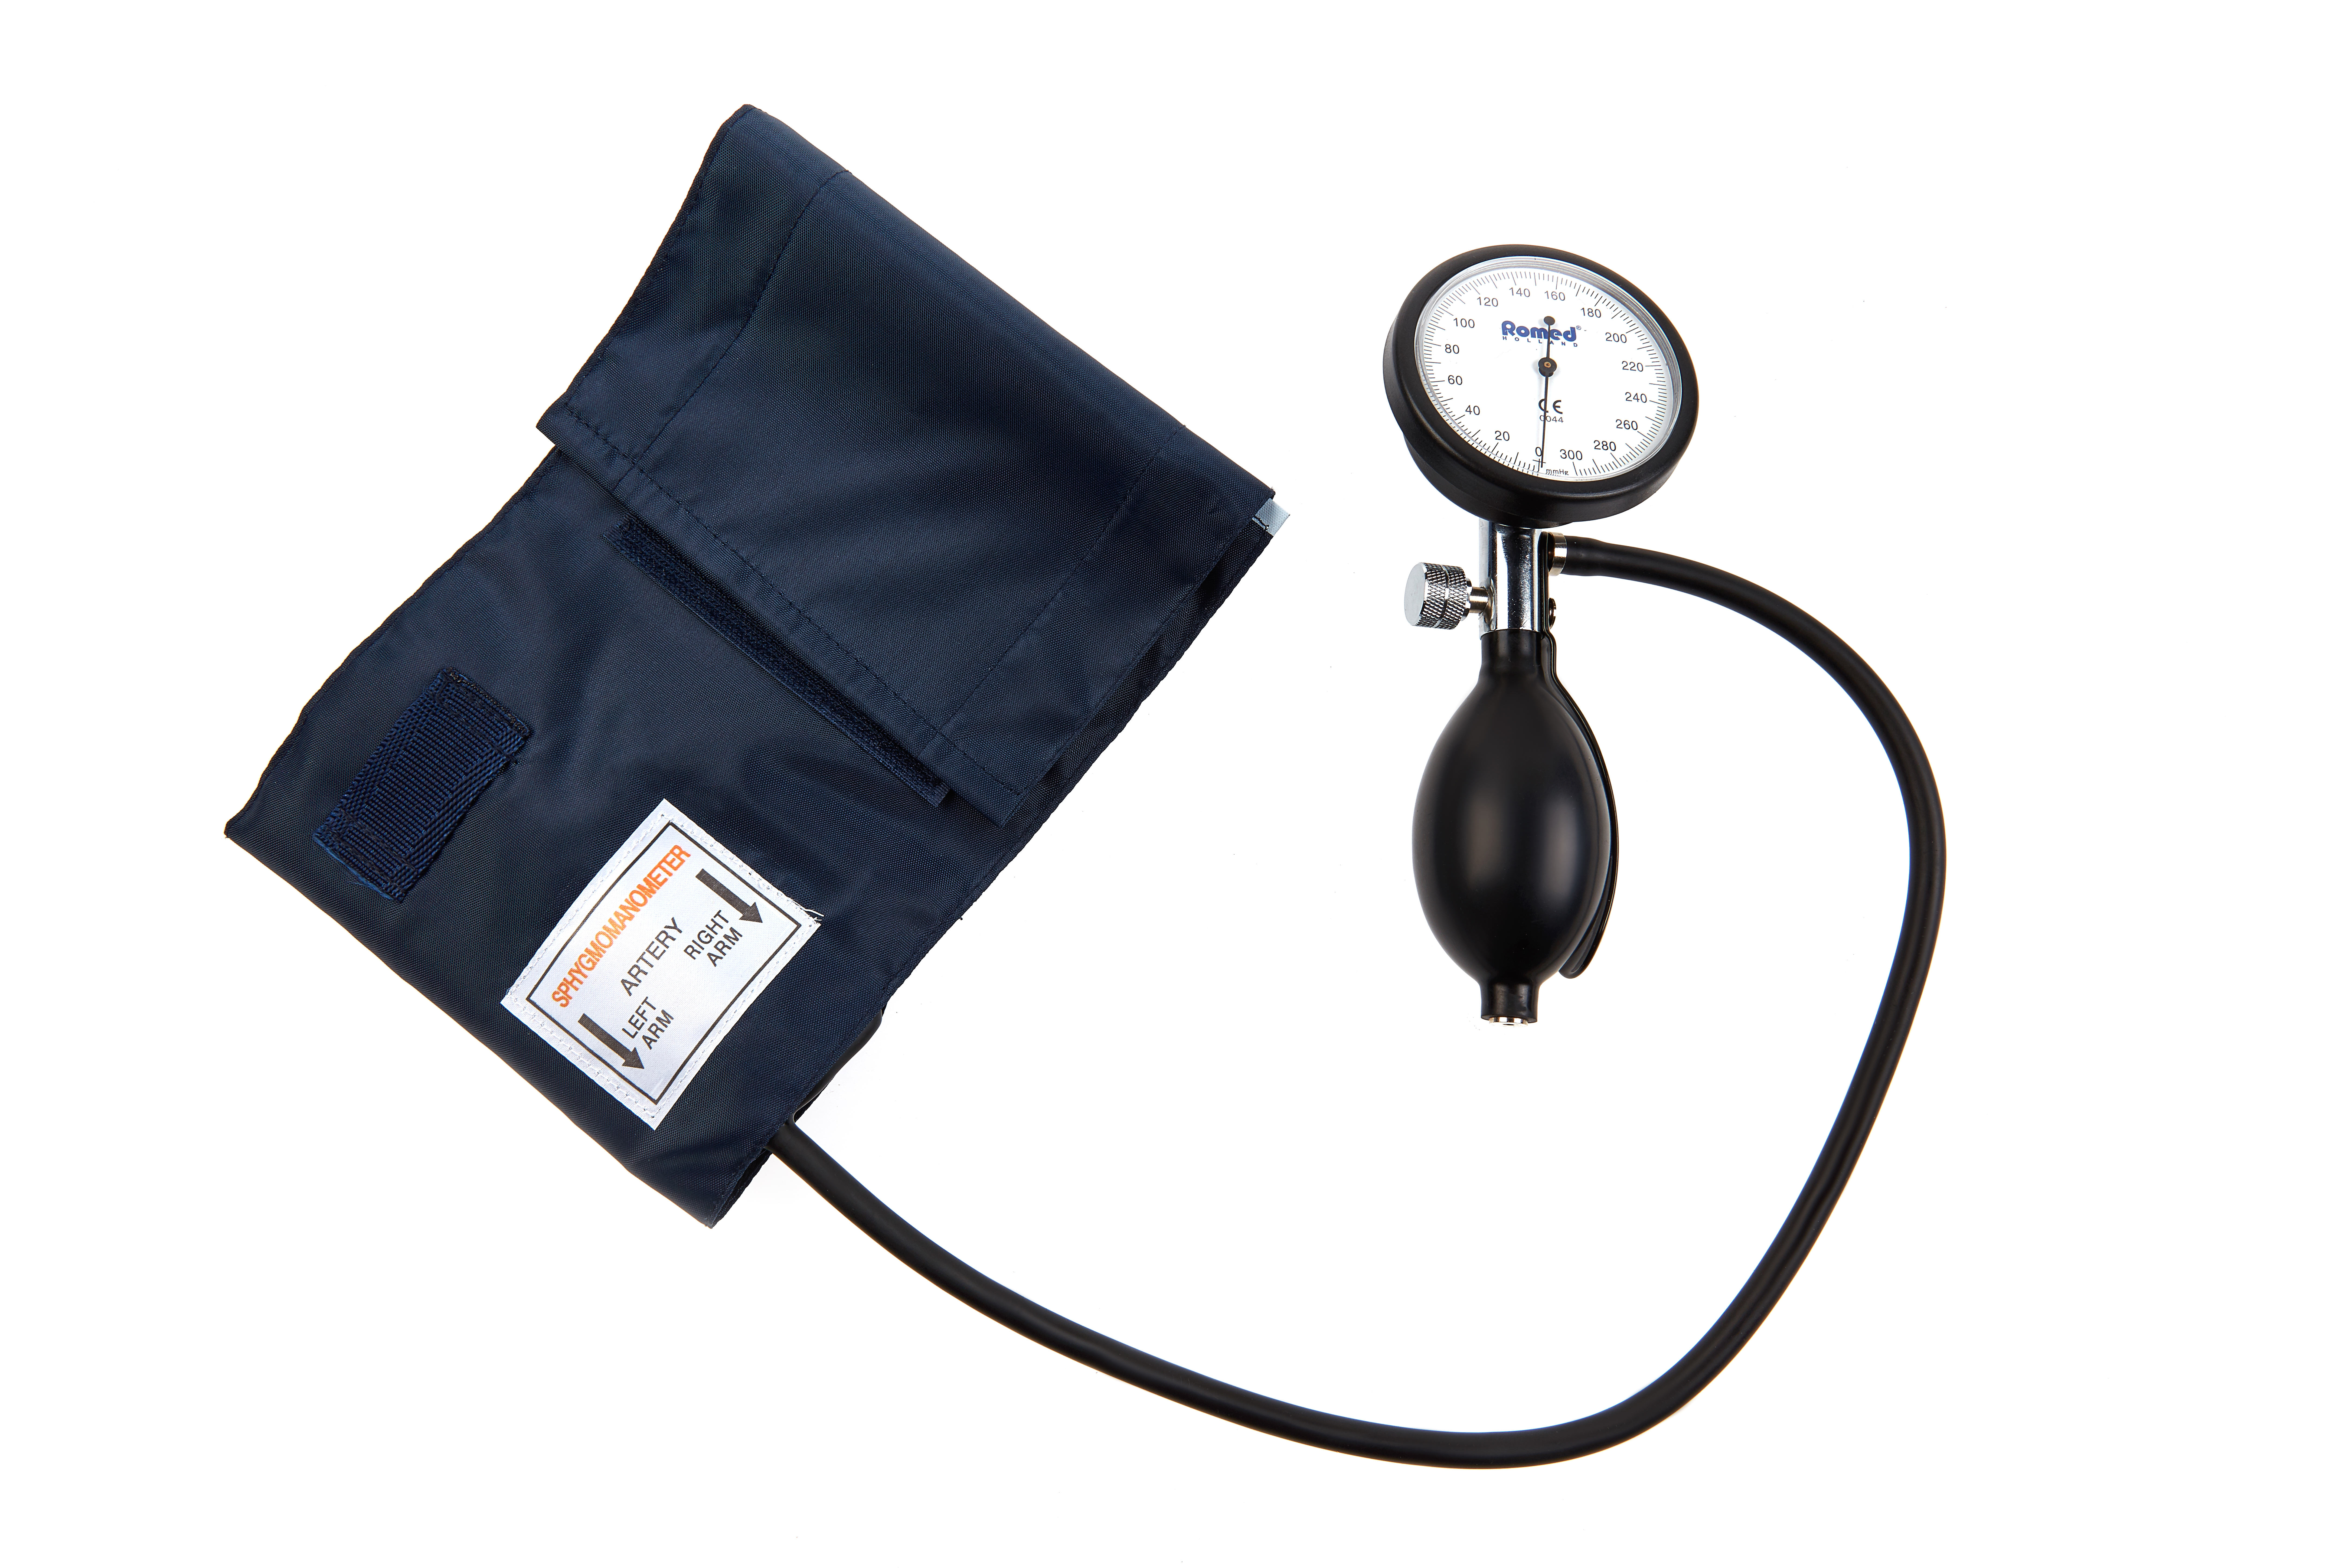 BPM-AN-50-HH Romed Blutdruckmesser aneroid, Erwachsenenmodell, palm type (integriertes Manometer), pro Stück in einer Schachtel, 50 Stück im Karton.